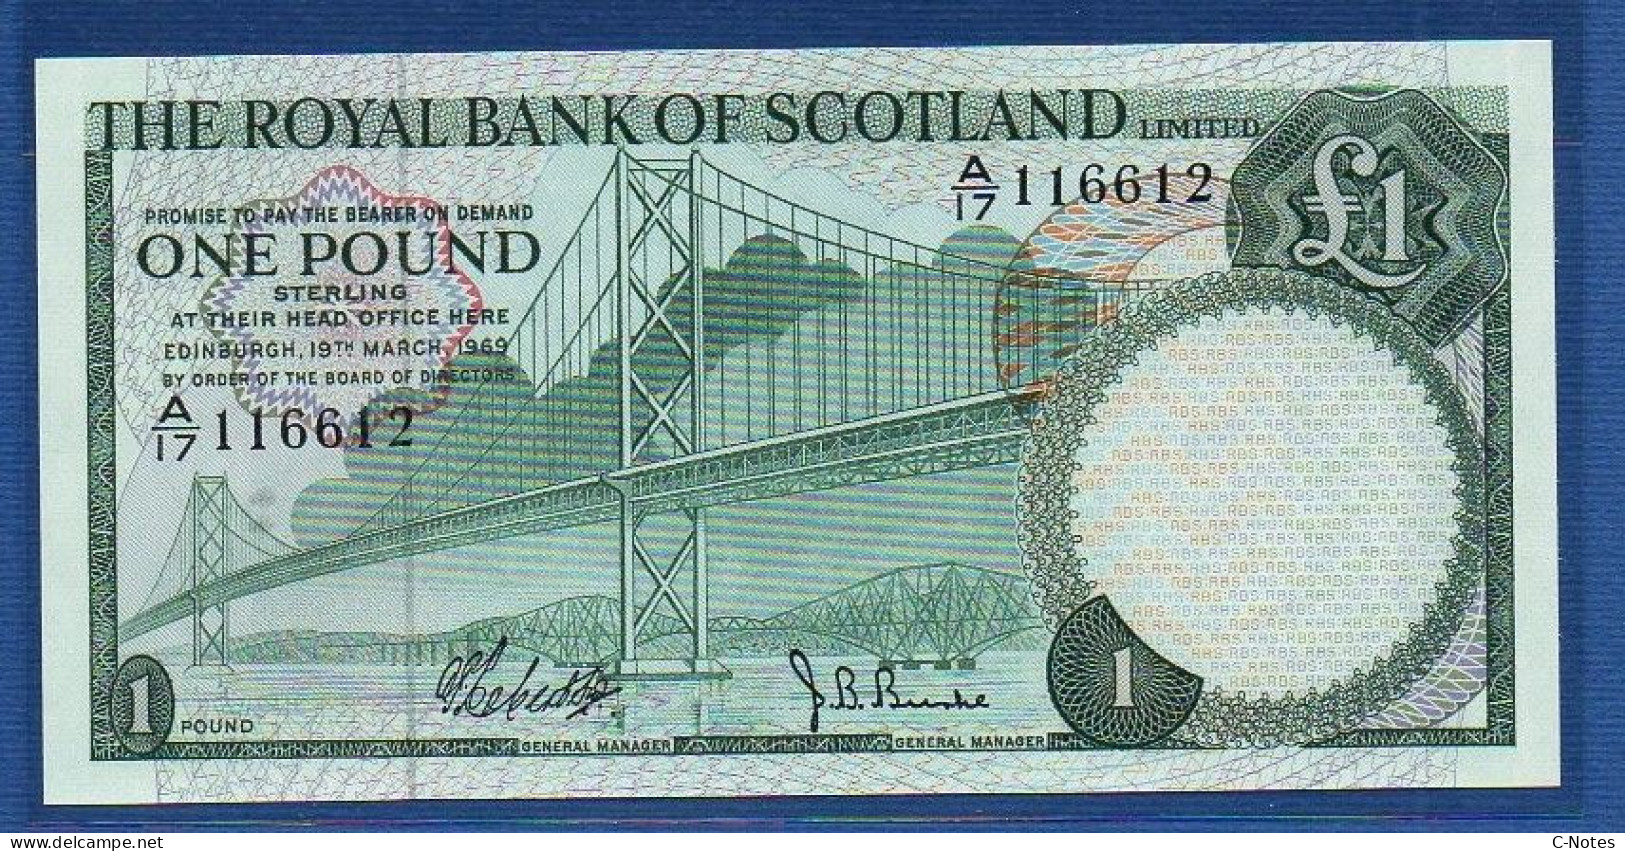 SCOTLAND - P.329 – 1 POUND 19.03.1969 UNC, S/n A/17 116612 - 1 Pound